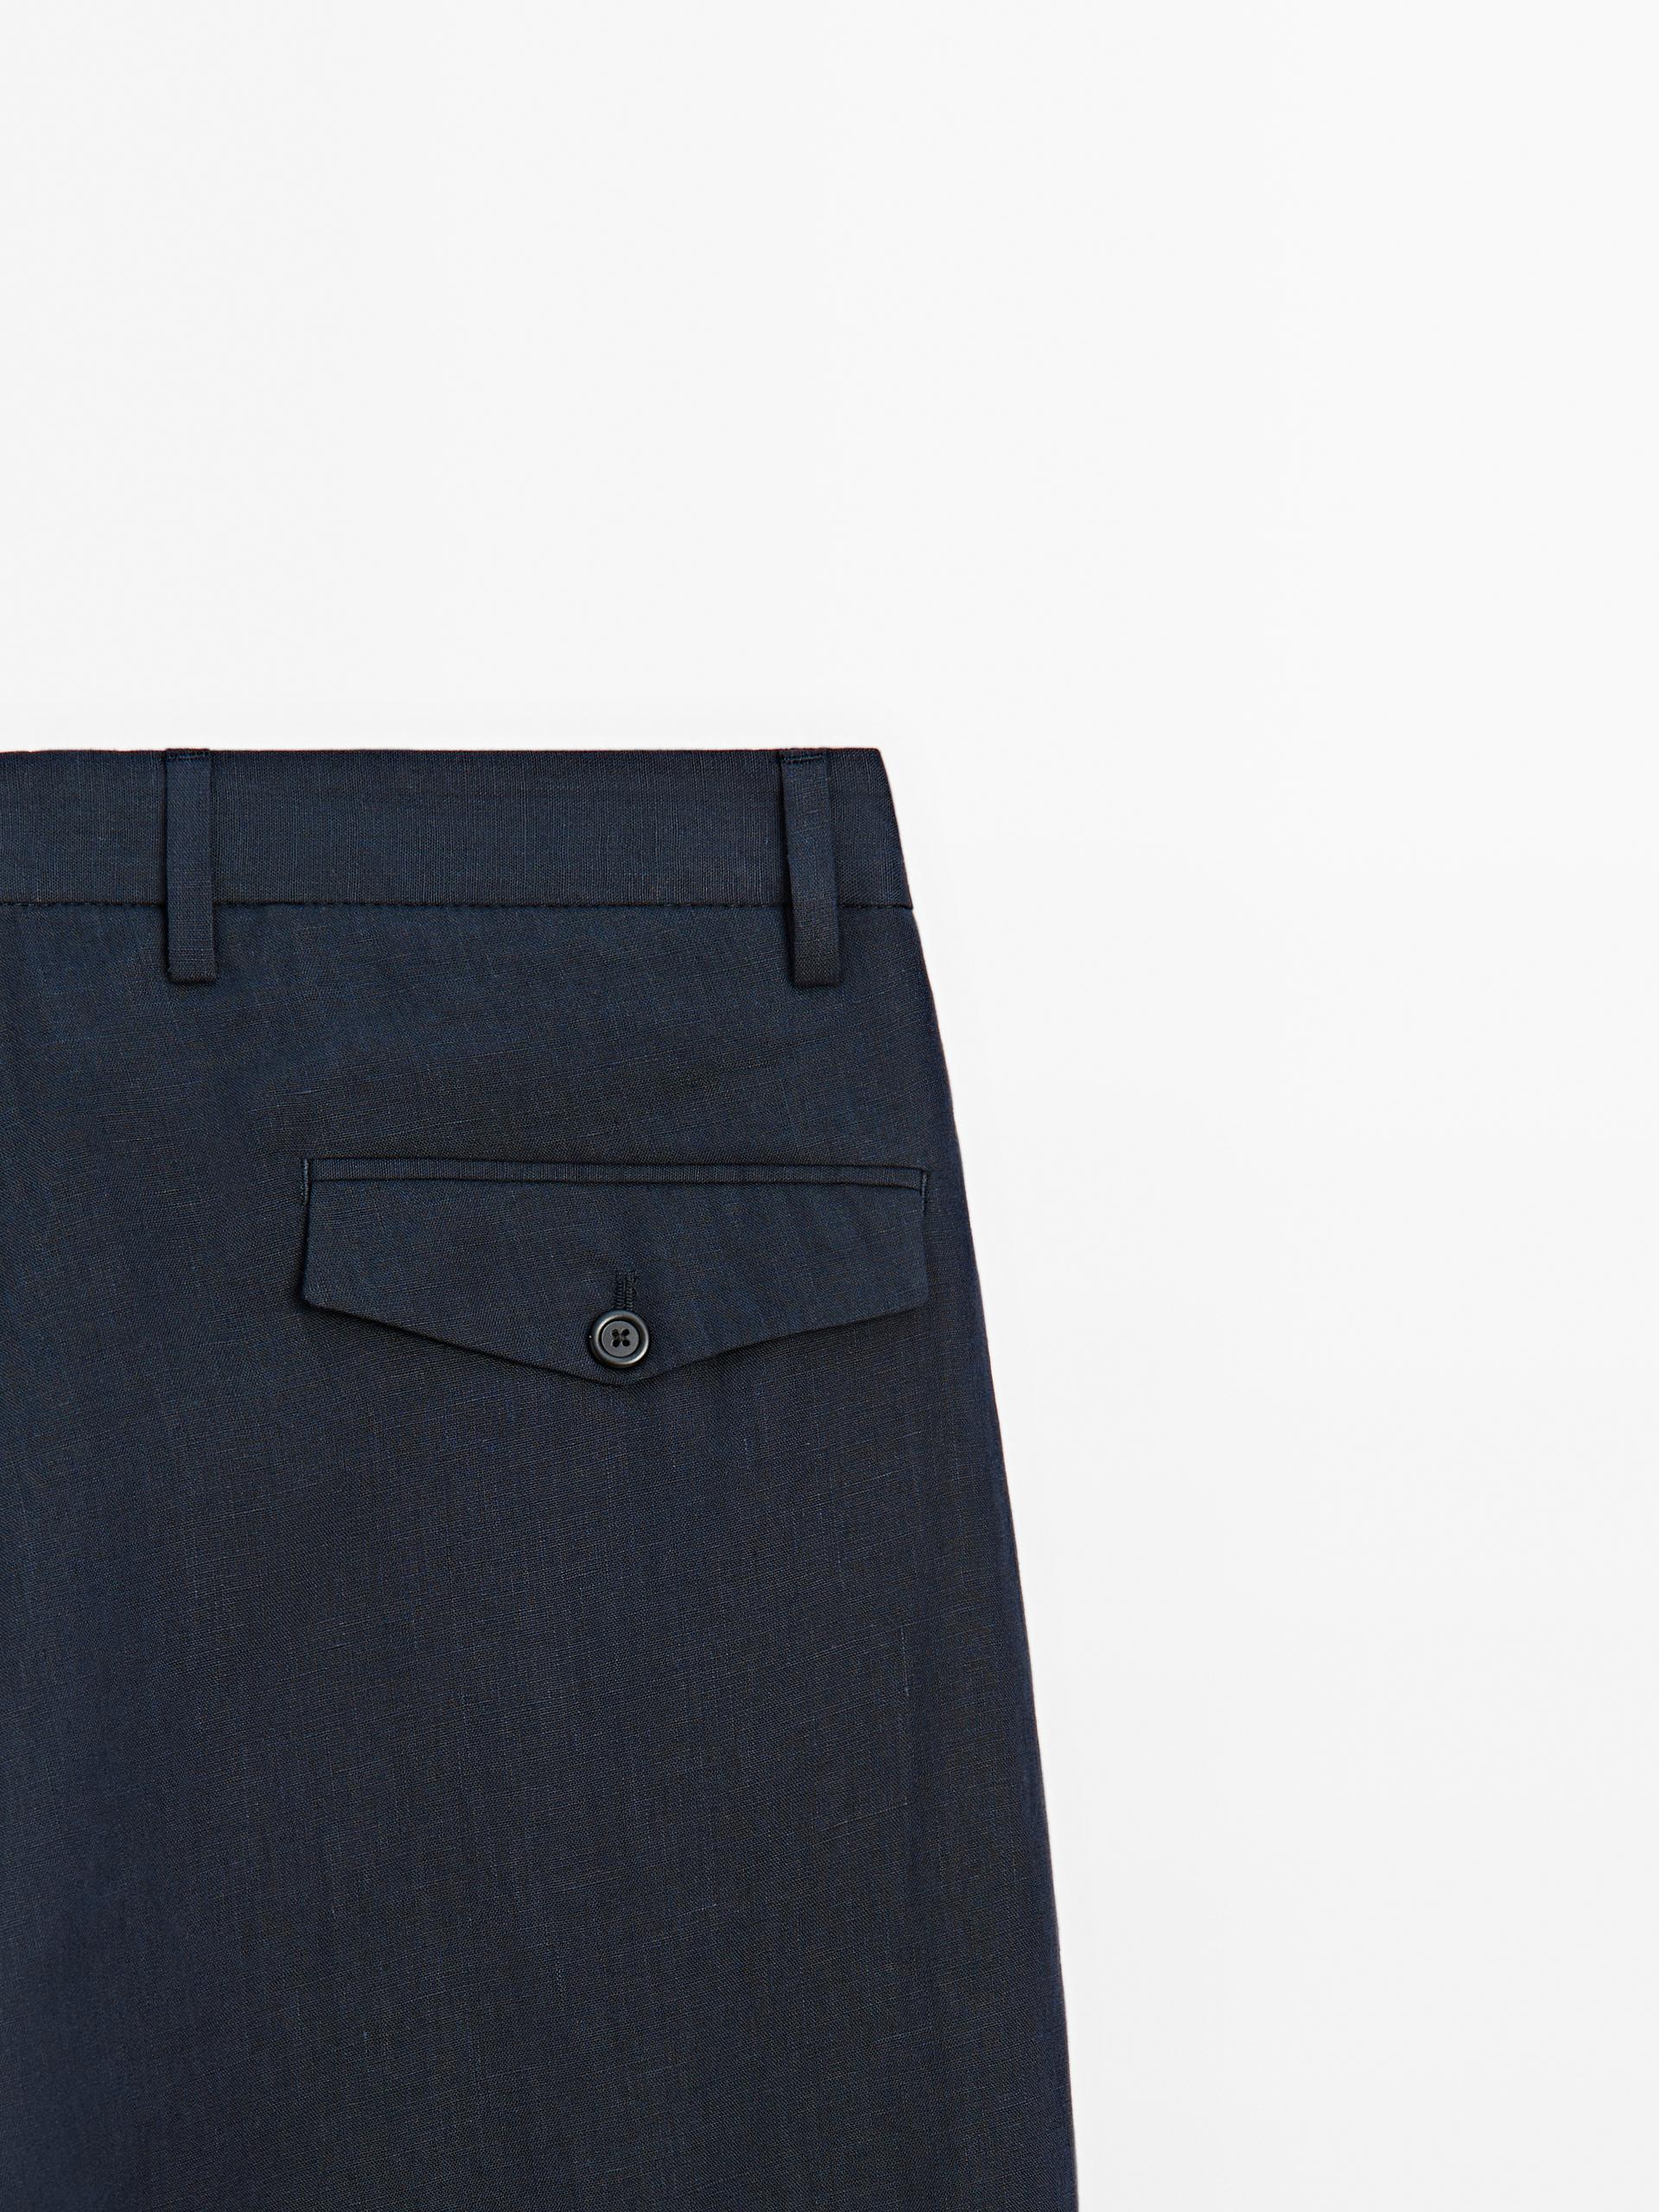 100% linen suit trousers - Navy blue